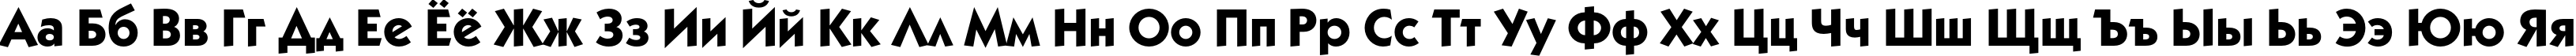 Пример написания русского алфавита шрифтом KabelC Medium Bold